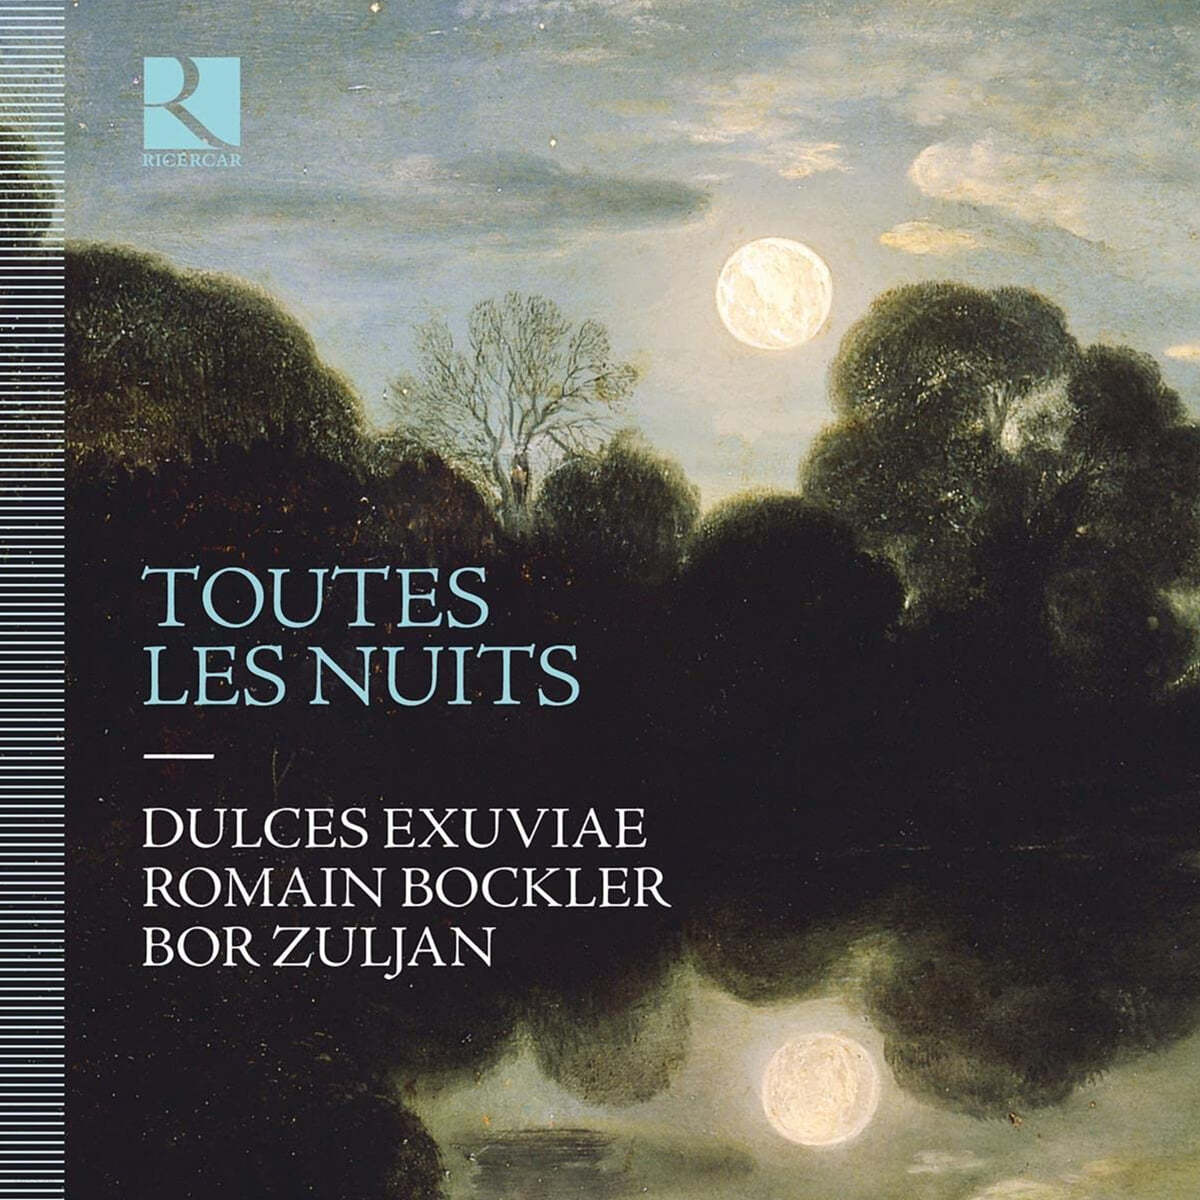 Dulces Exuviae 밤의 음악 - 16세기 류트 가곡집 (Toutes les nuits)